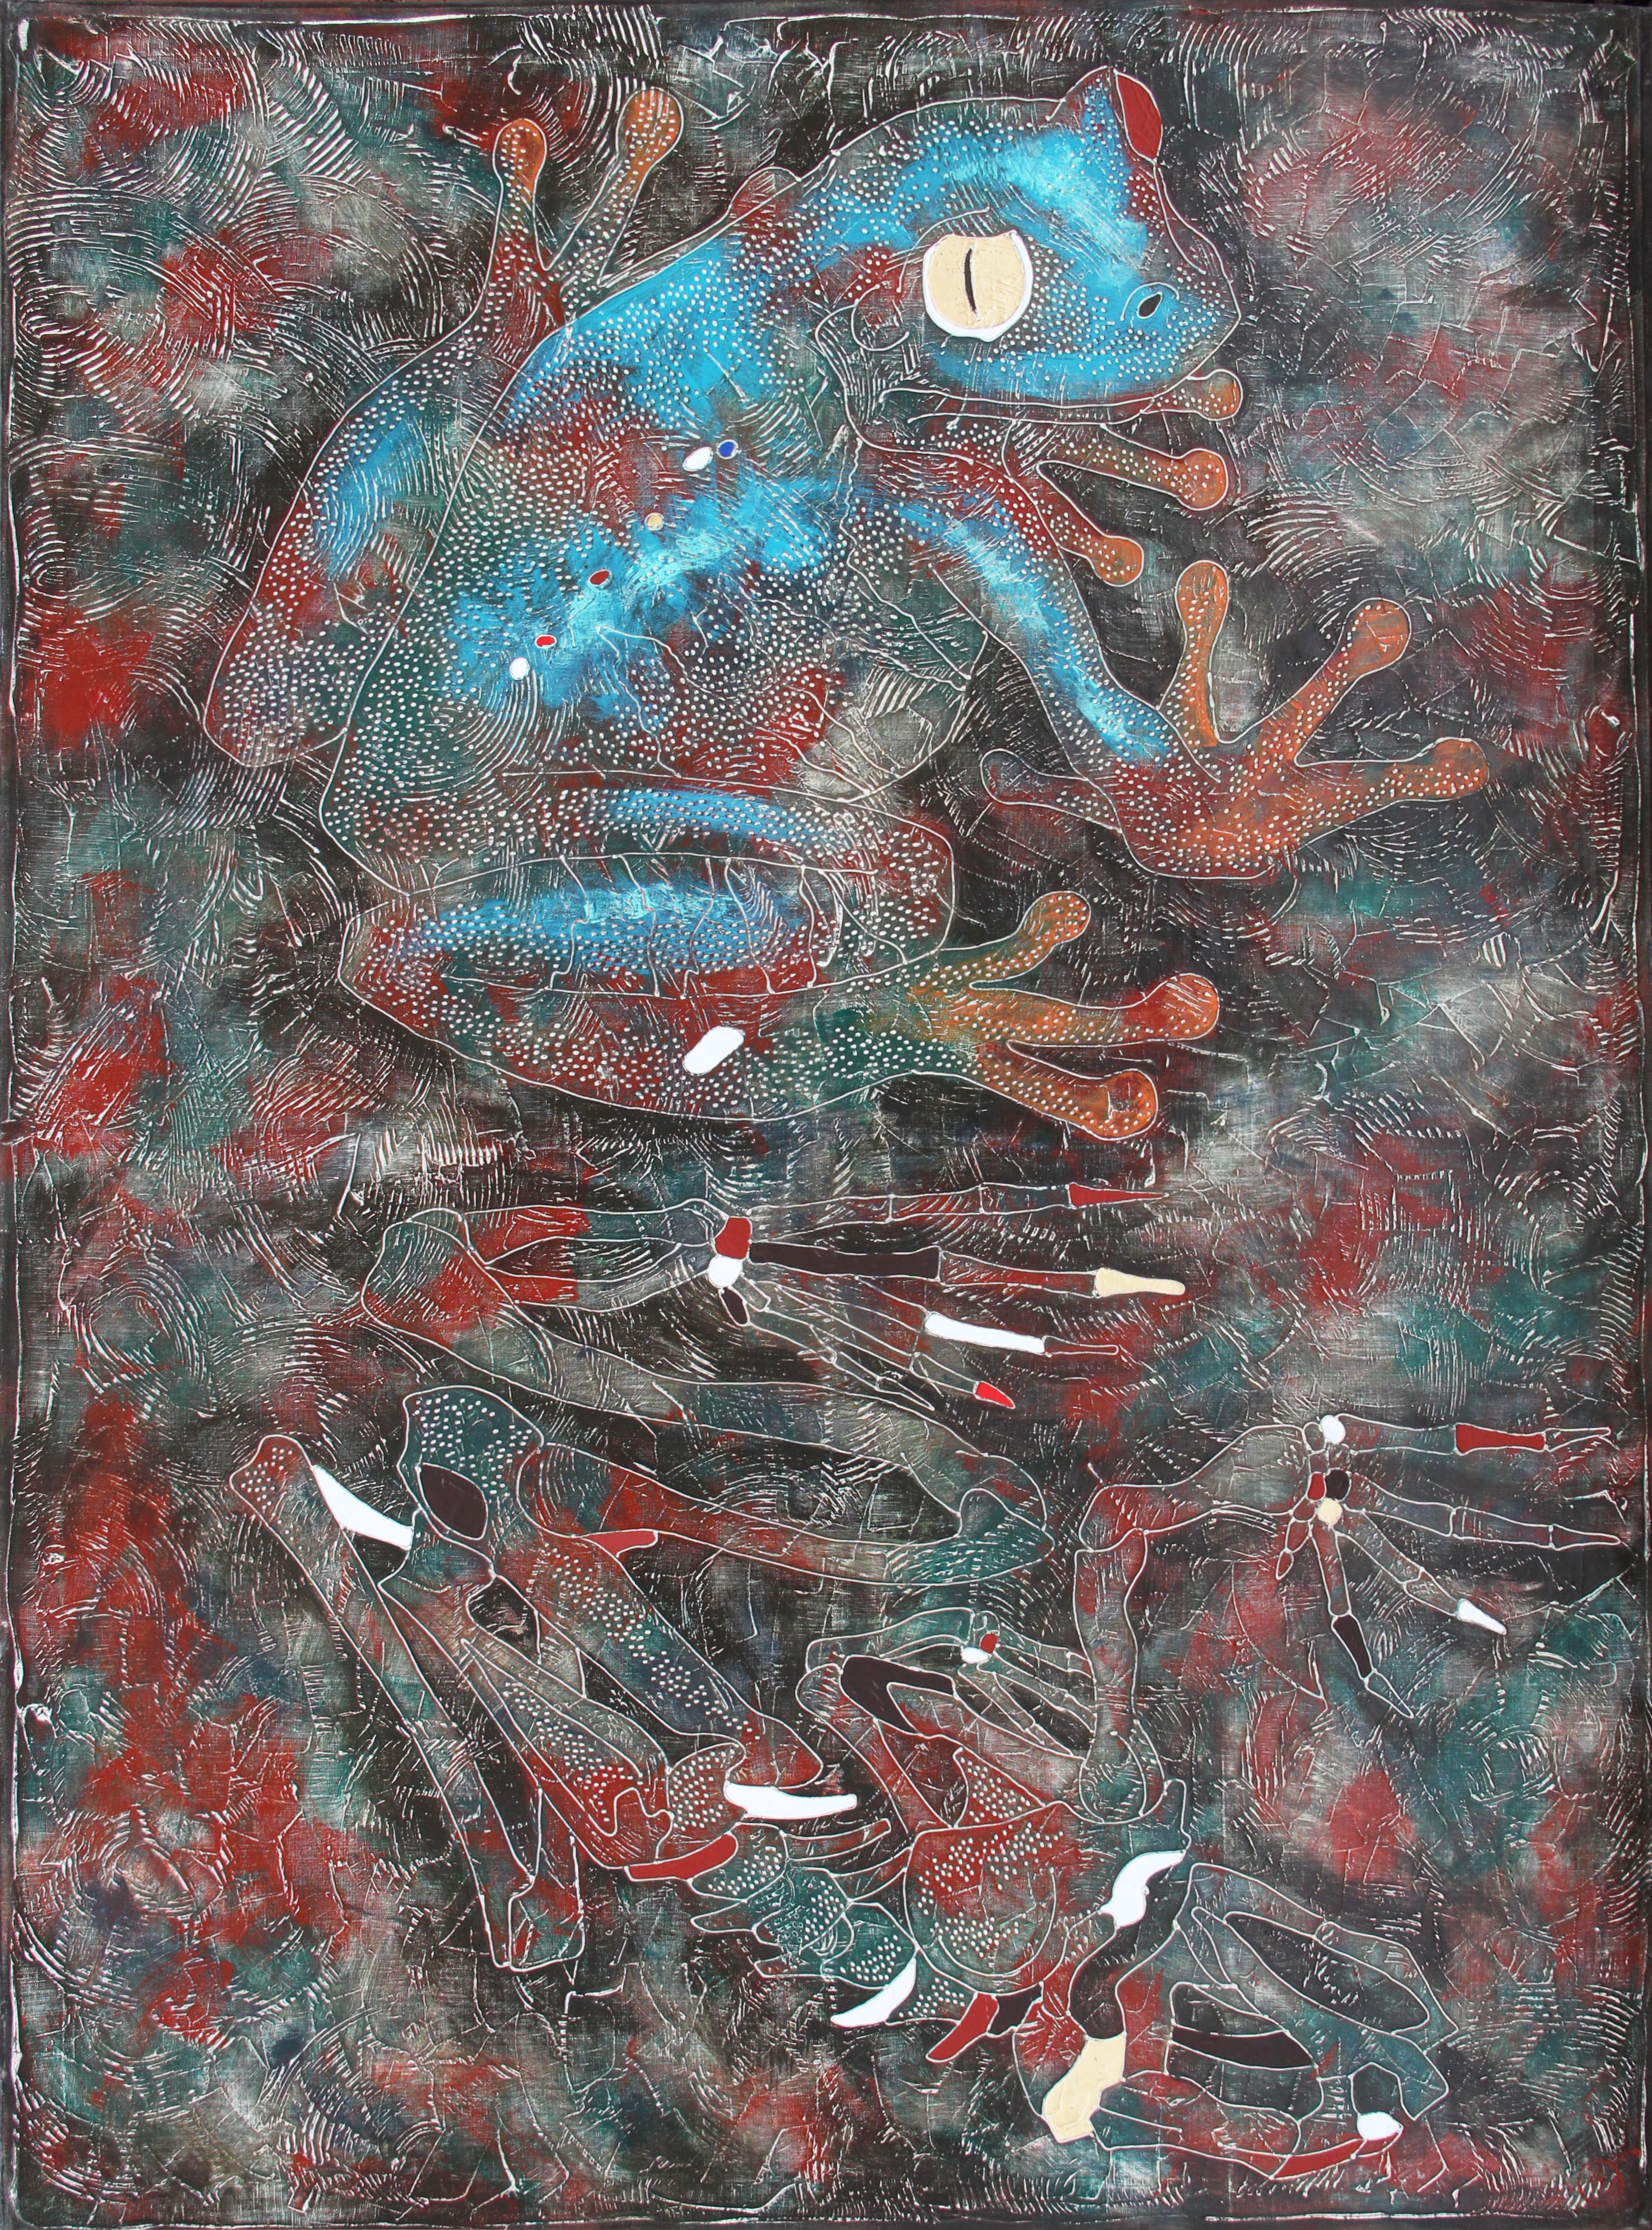 
Die Farbe wird in der Technik des Autors der Malerei von Vasily Zianko basierte Acrylmalerei auf Leinwand mit einer Vielzahl von Texturen, Wäschen, die feinste Lasur, volumetrische Konturen gemacht. Das Kunstwerk ist für blinde und sehbehinderte